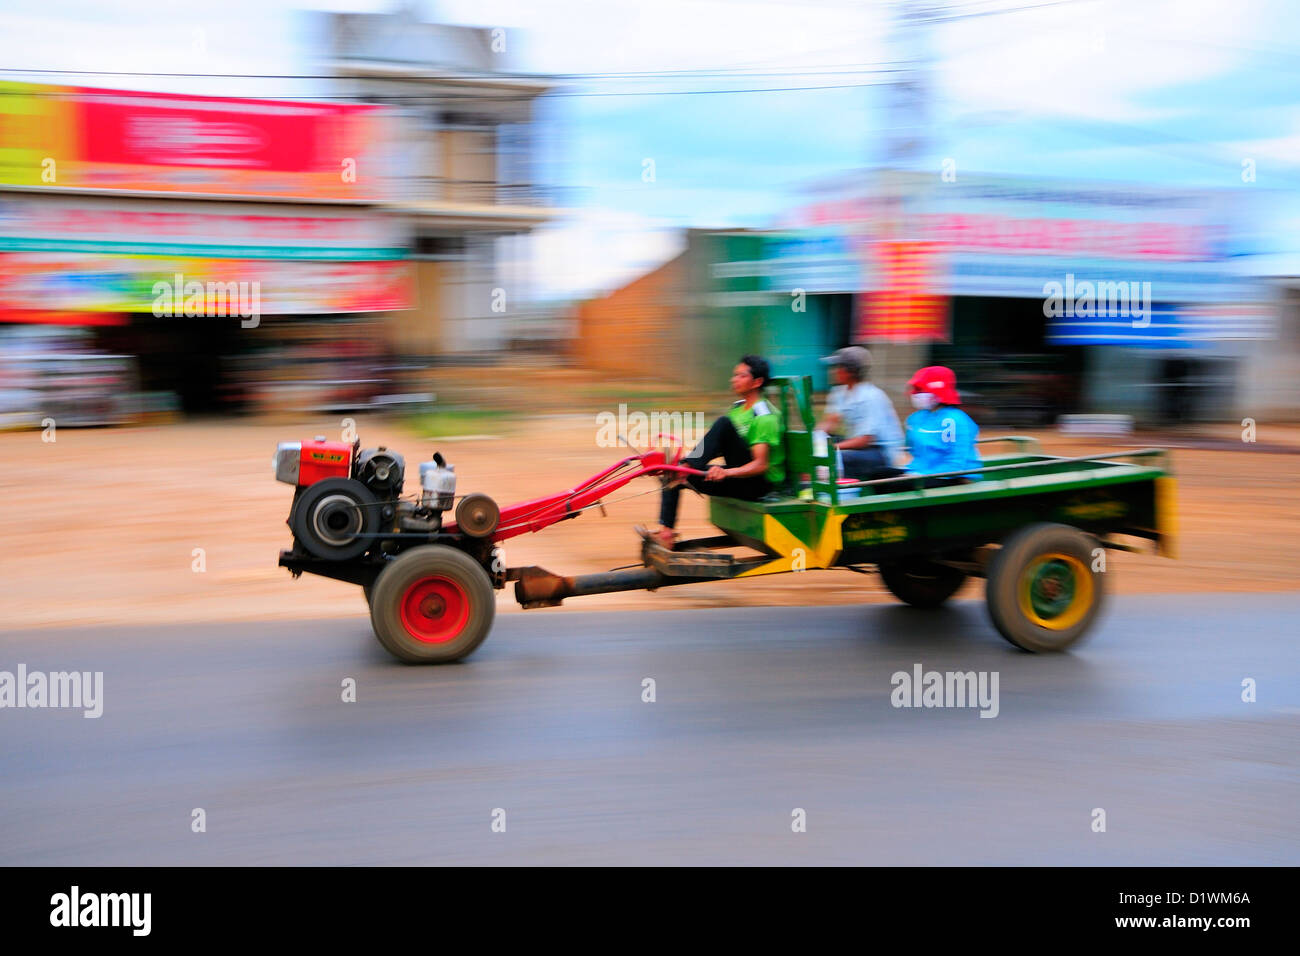 Xe máy cày vietnamita (tractor y remolque) con los pasajeros. La altiplanicie central. Buon Ma Thuot, Dak Lak, Vietnam Foto de stock